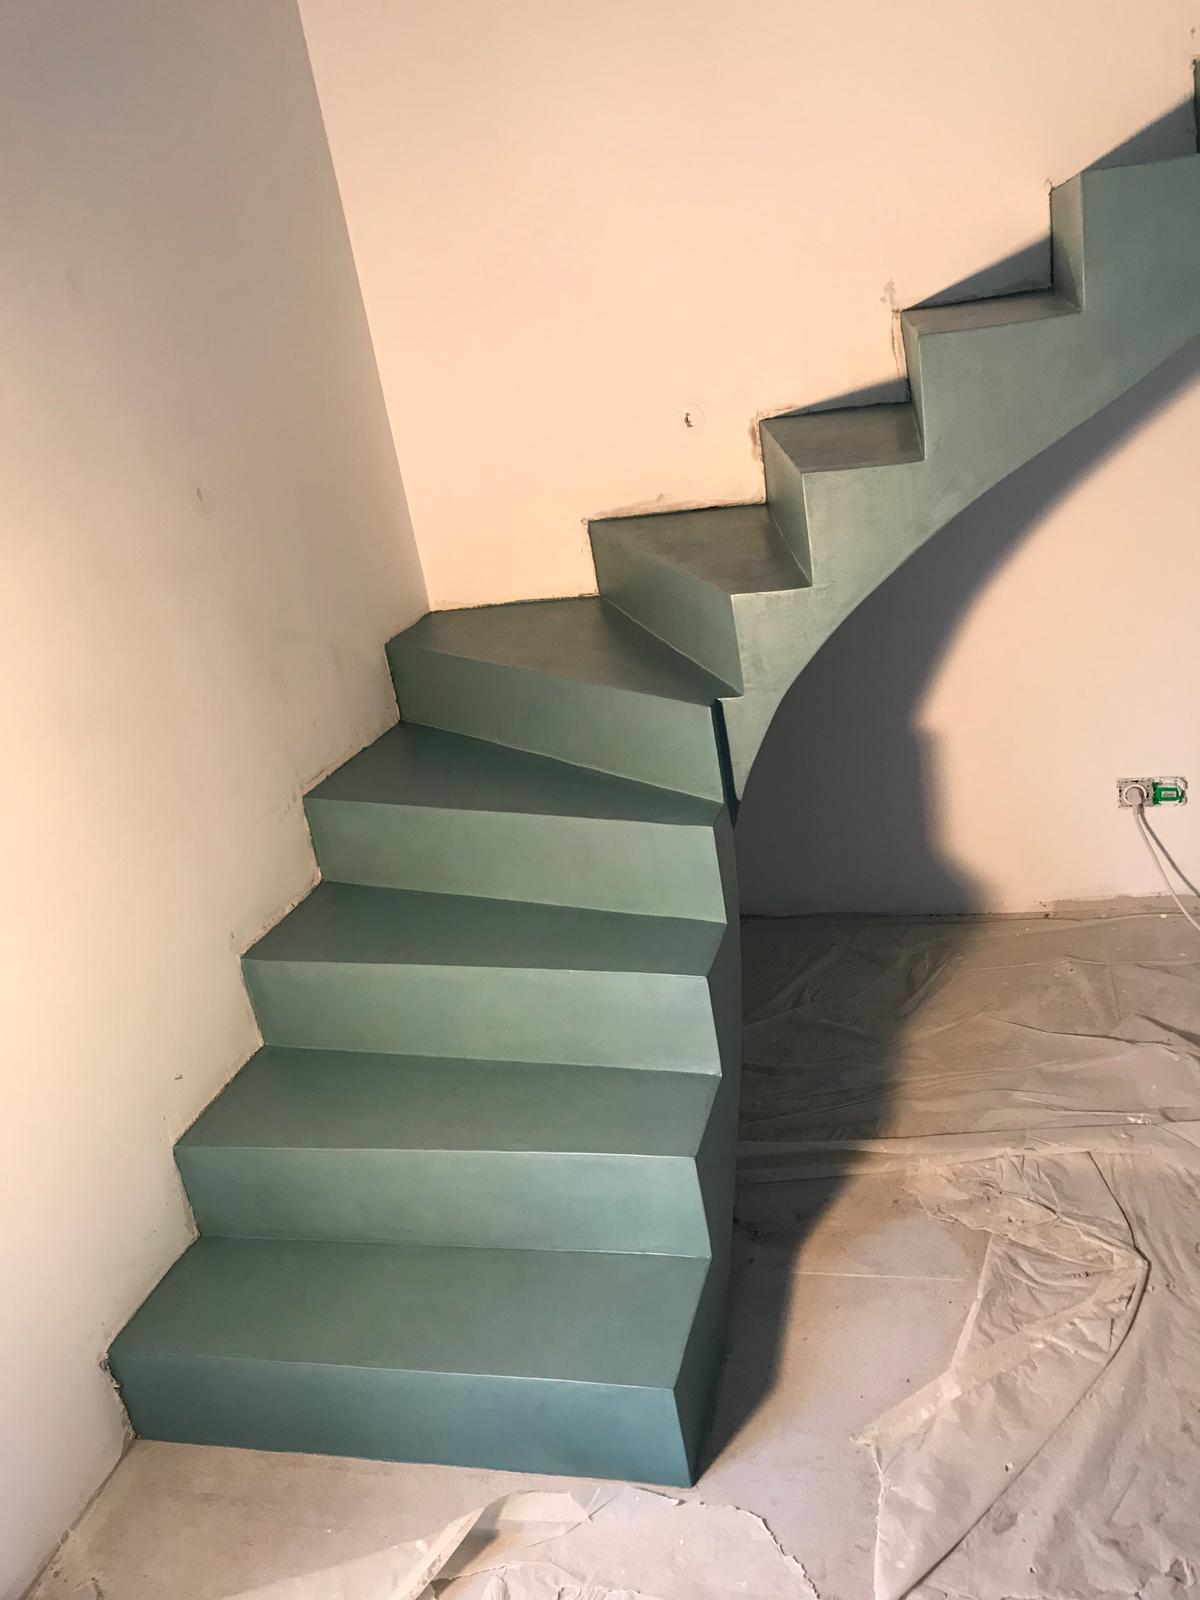 audacieux escalier crémaillère dans une pièce à vivre en béton ciré vernis mat couleur malachite pour un particulier